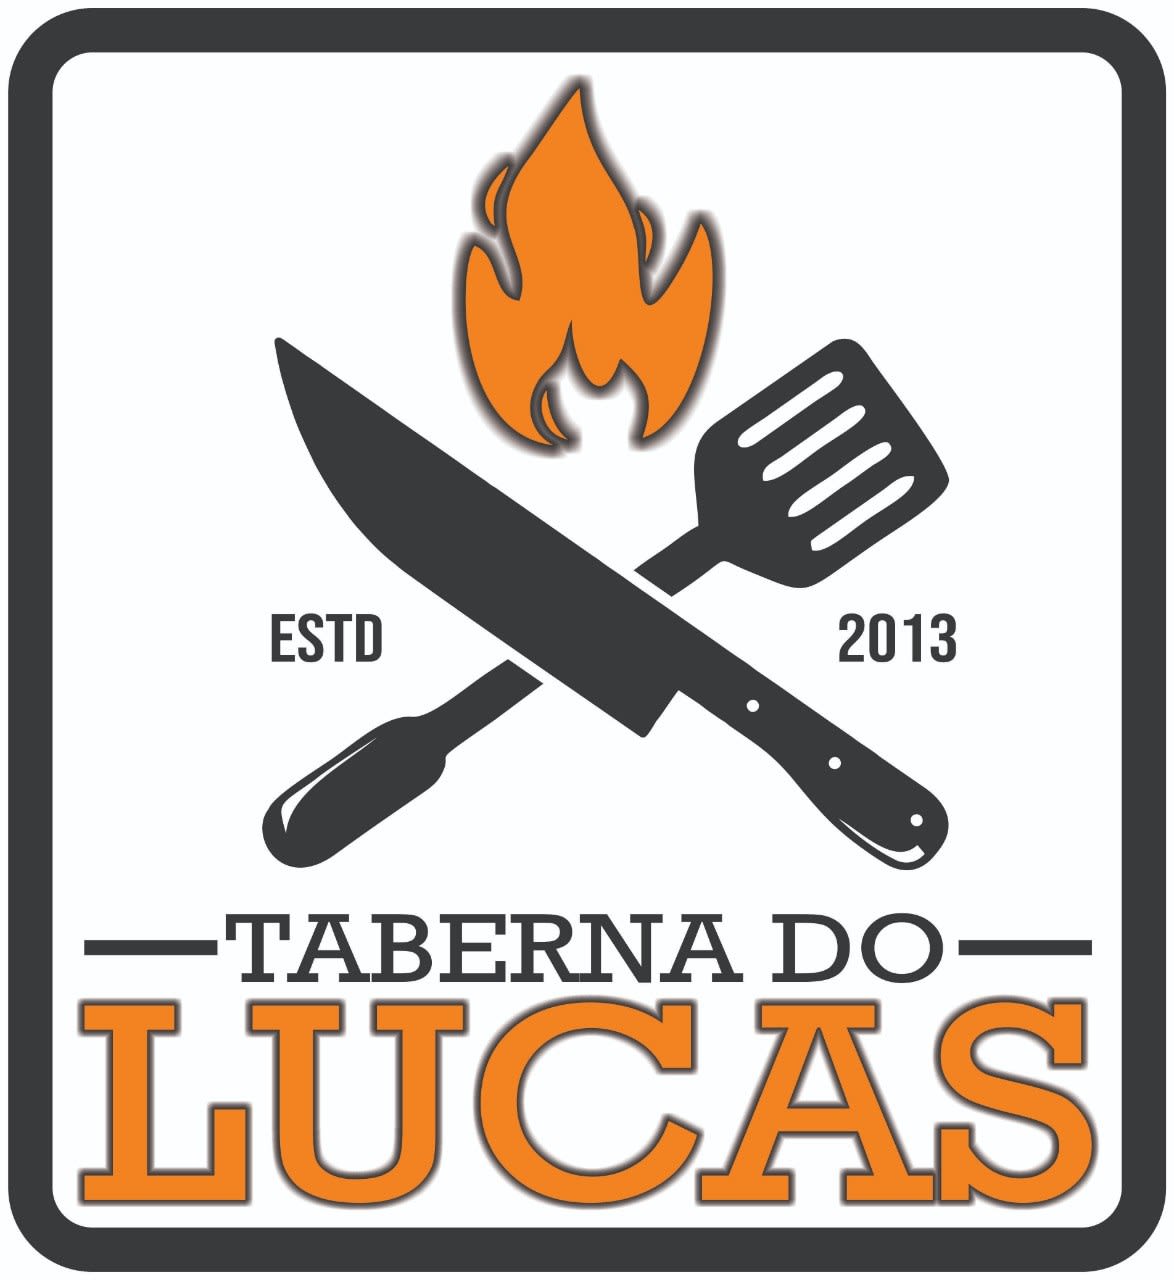 Chef Lucas Oliveira